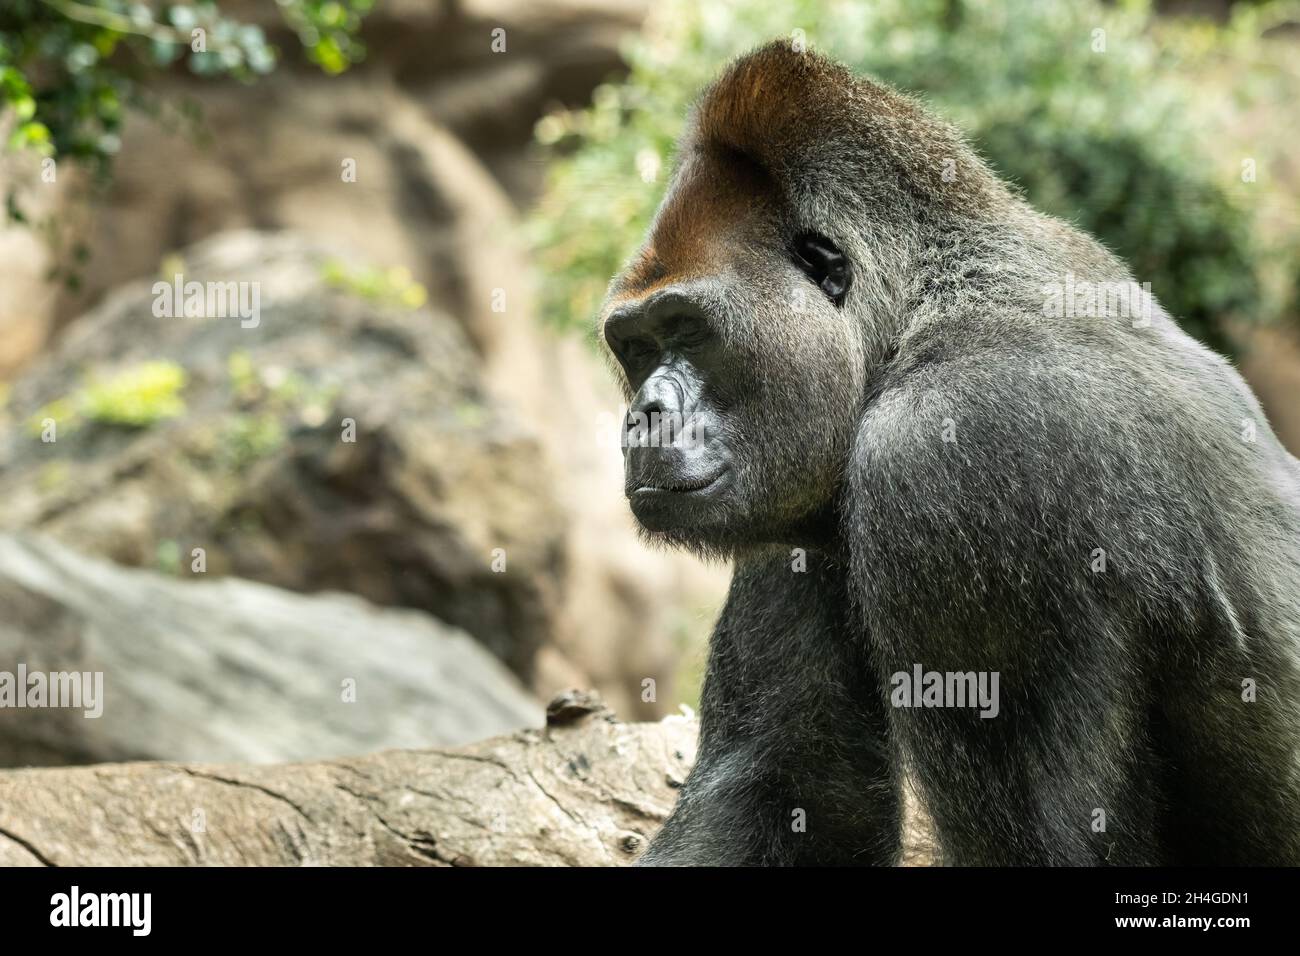 Un gorilla lowland occidentale con una pouty Expression.The gorilla mi guarda. Foto Stock